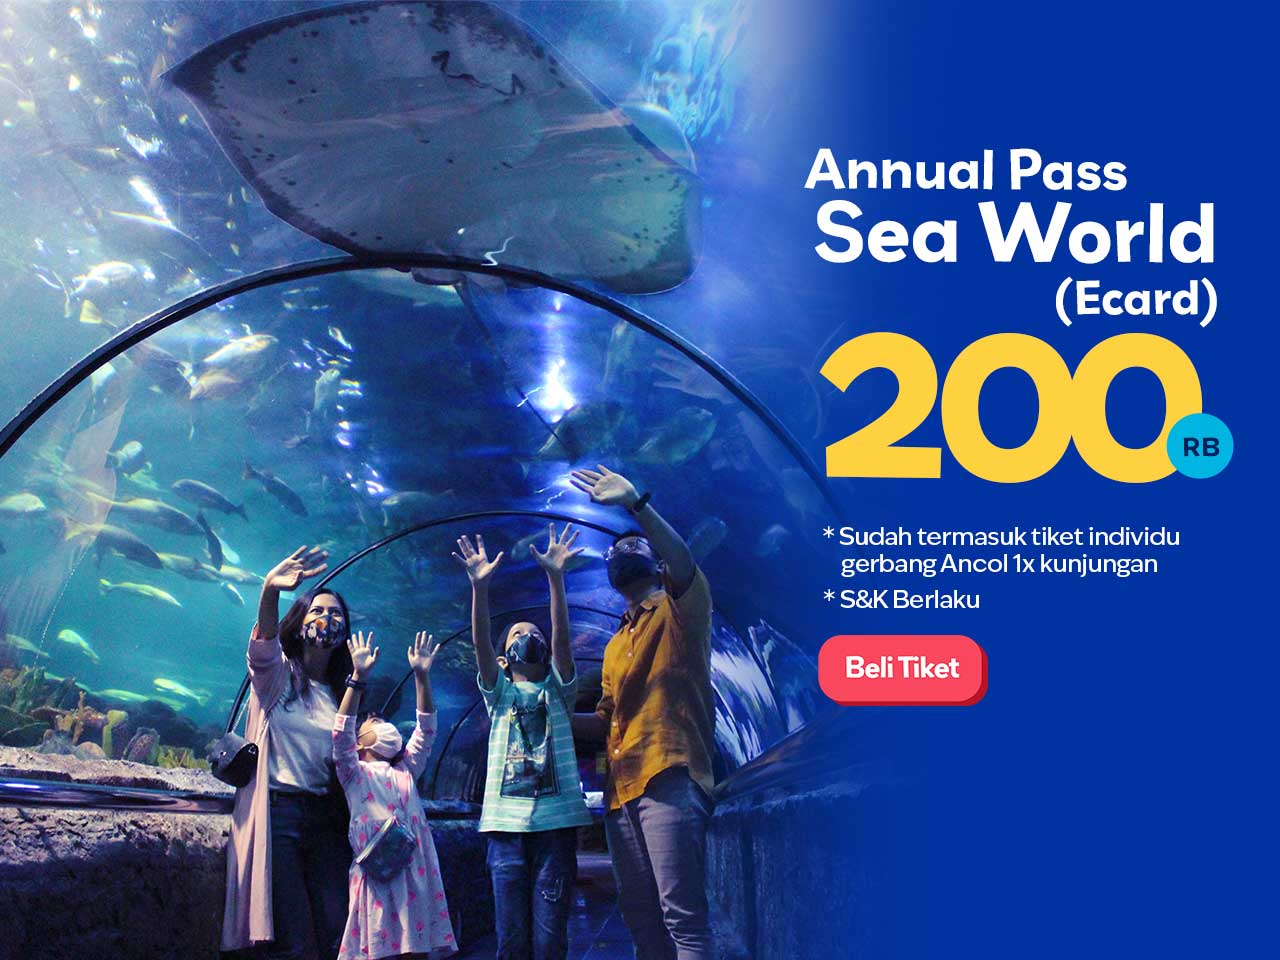 Gratis Rekreasi Setahun ke Sea World Ancol Cuma 200rb Dengan Annual Pass